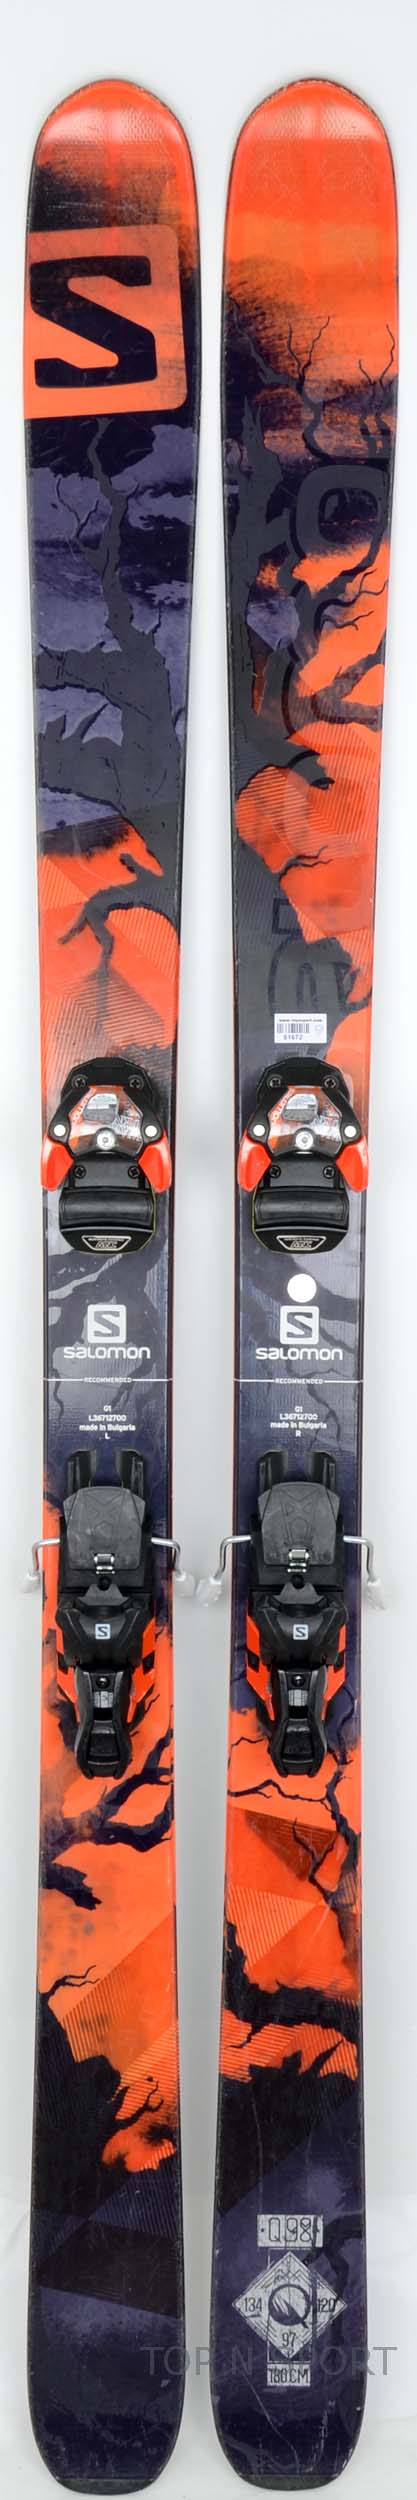 Salomon Q 98  - skis d'occasion